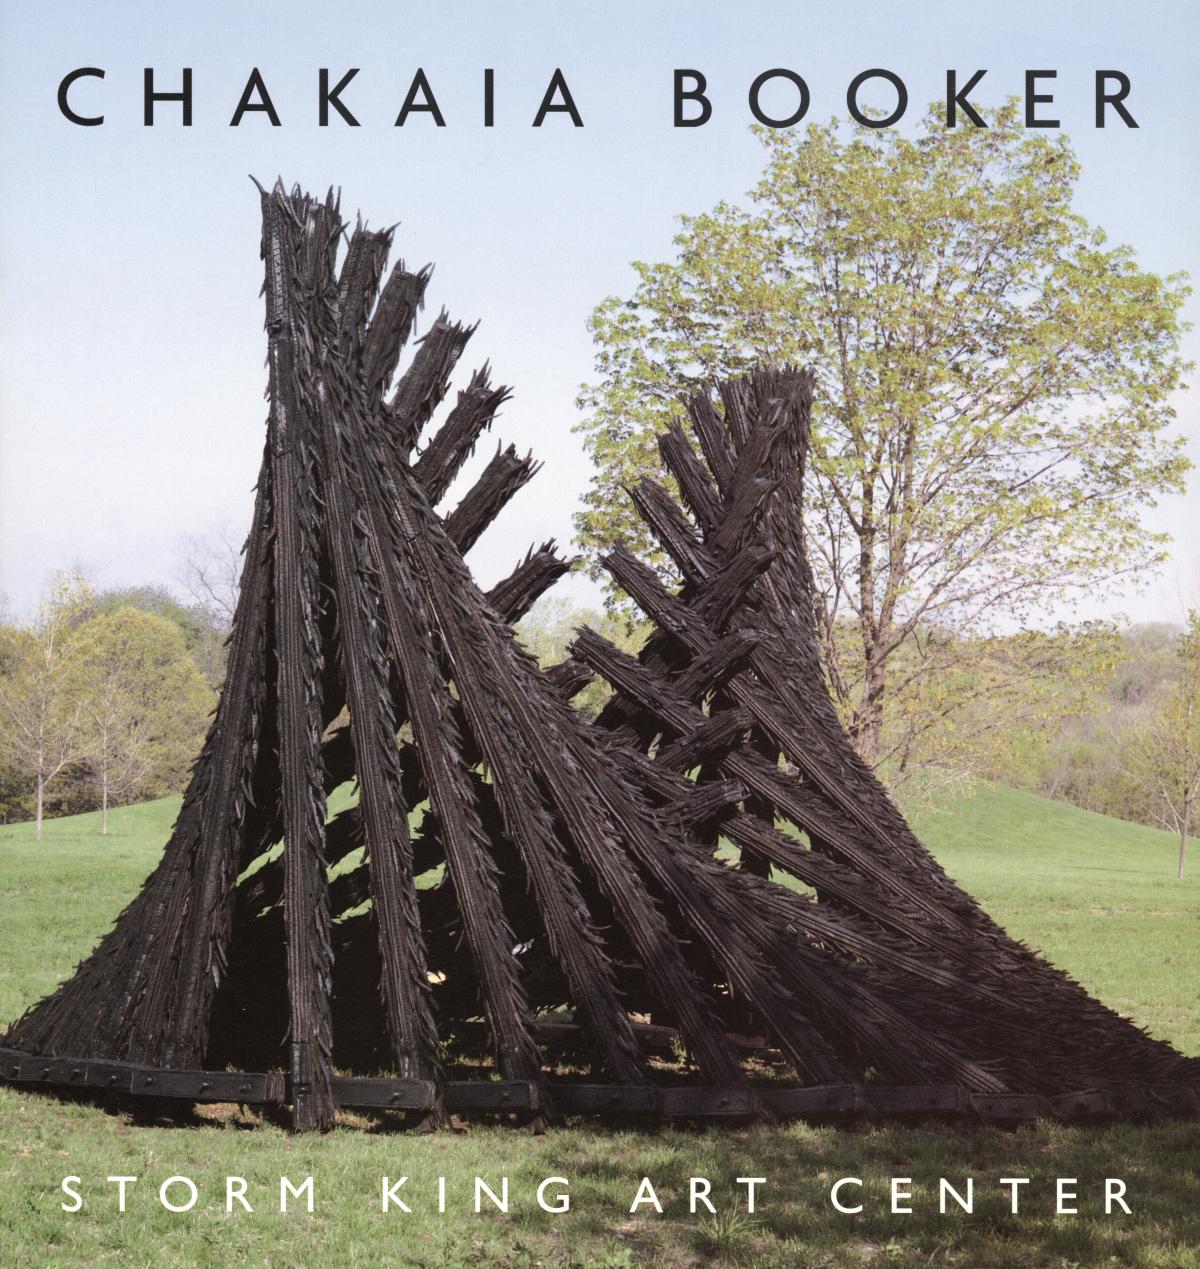 Chakaia Booker at the Storm King Art Center, May 12-November 14, 2004